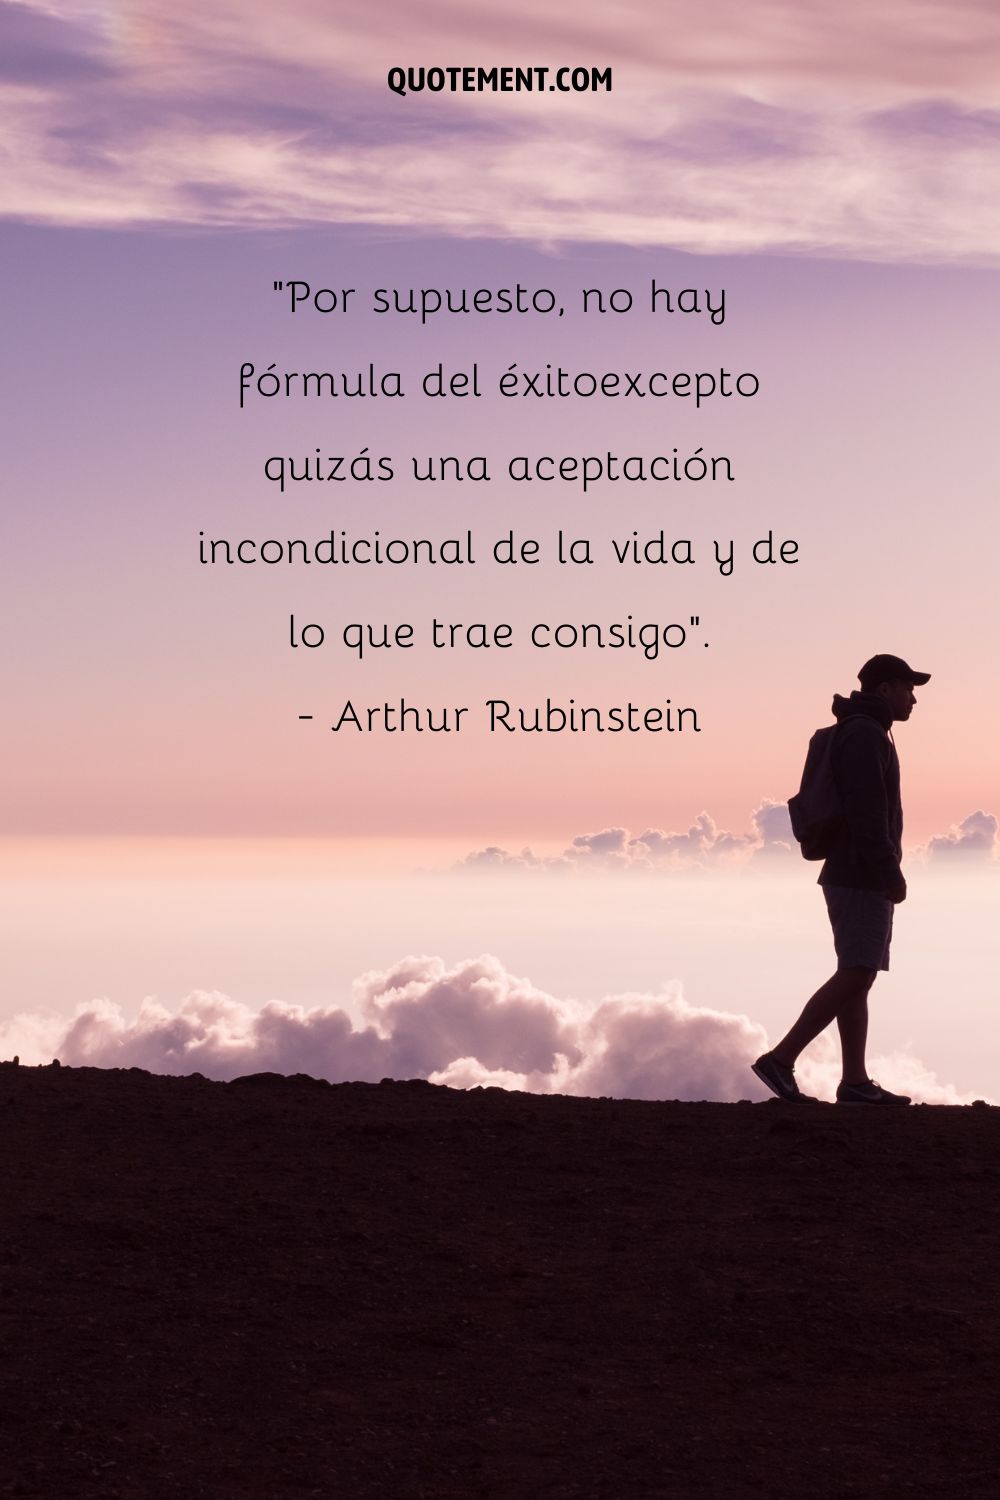 "Por supuesto, no hay fórmula para el éxito, excepto quizás una aceptación incondicional de la vida, y de lo que trae consigo". - Arthur Rubinstein